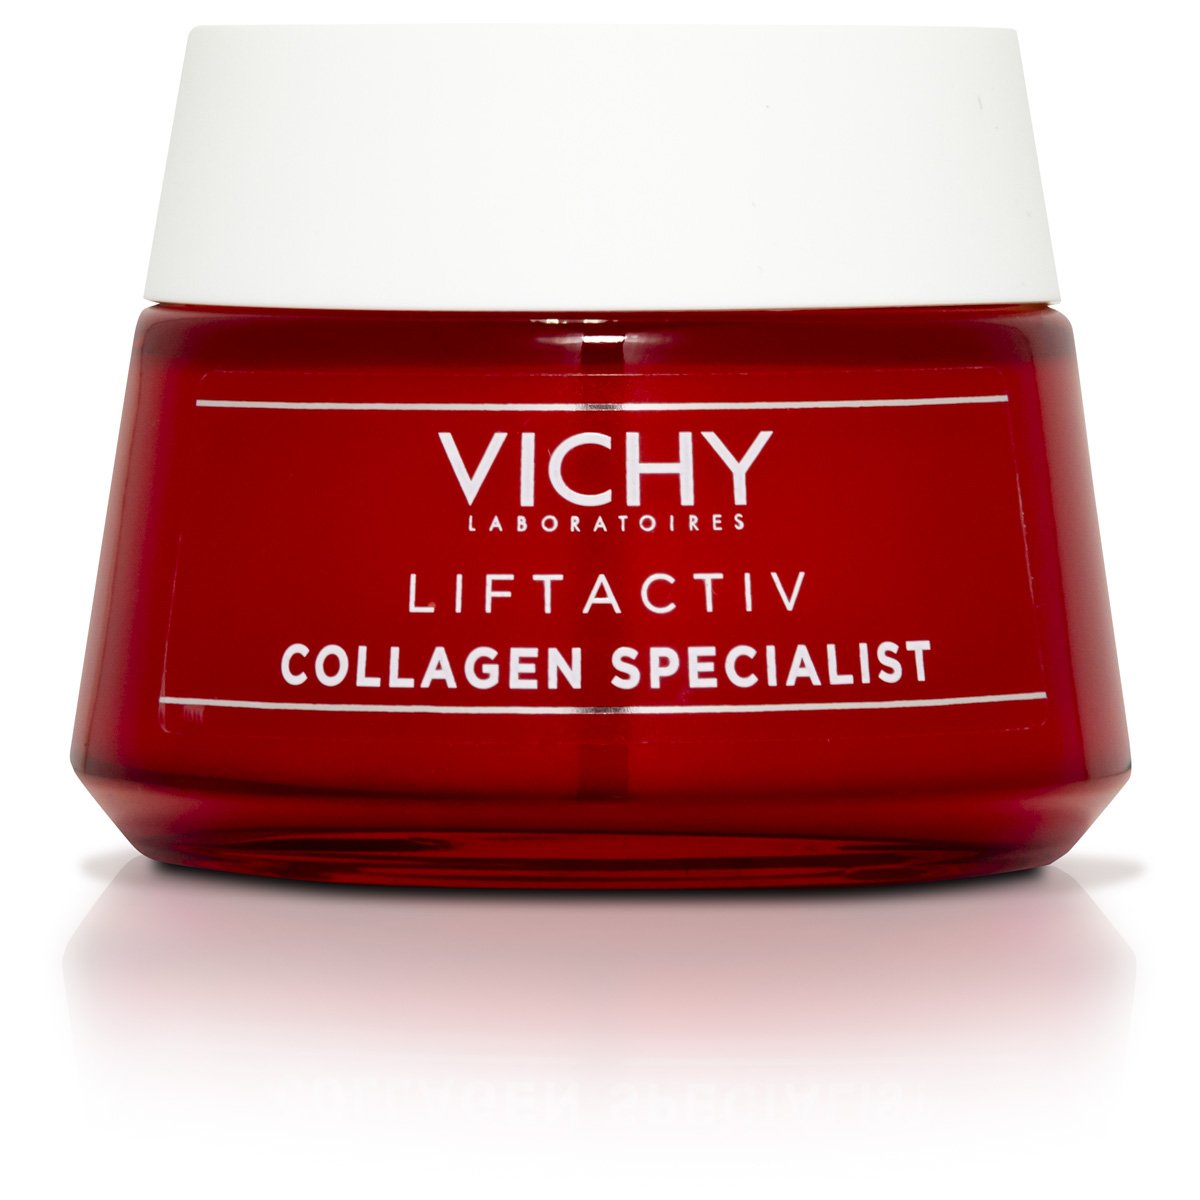 Vichy Liftactiv Collagen Specialist Crema Contra la Pérdida de Colágeno 50Ml